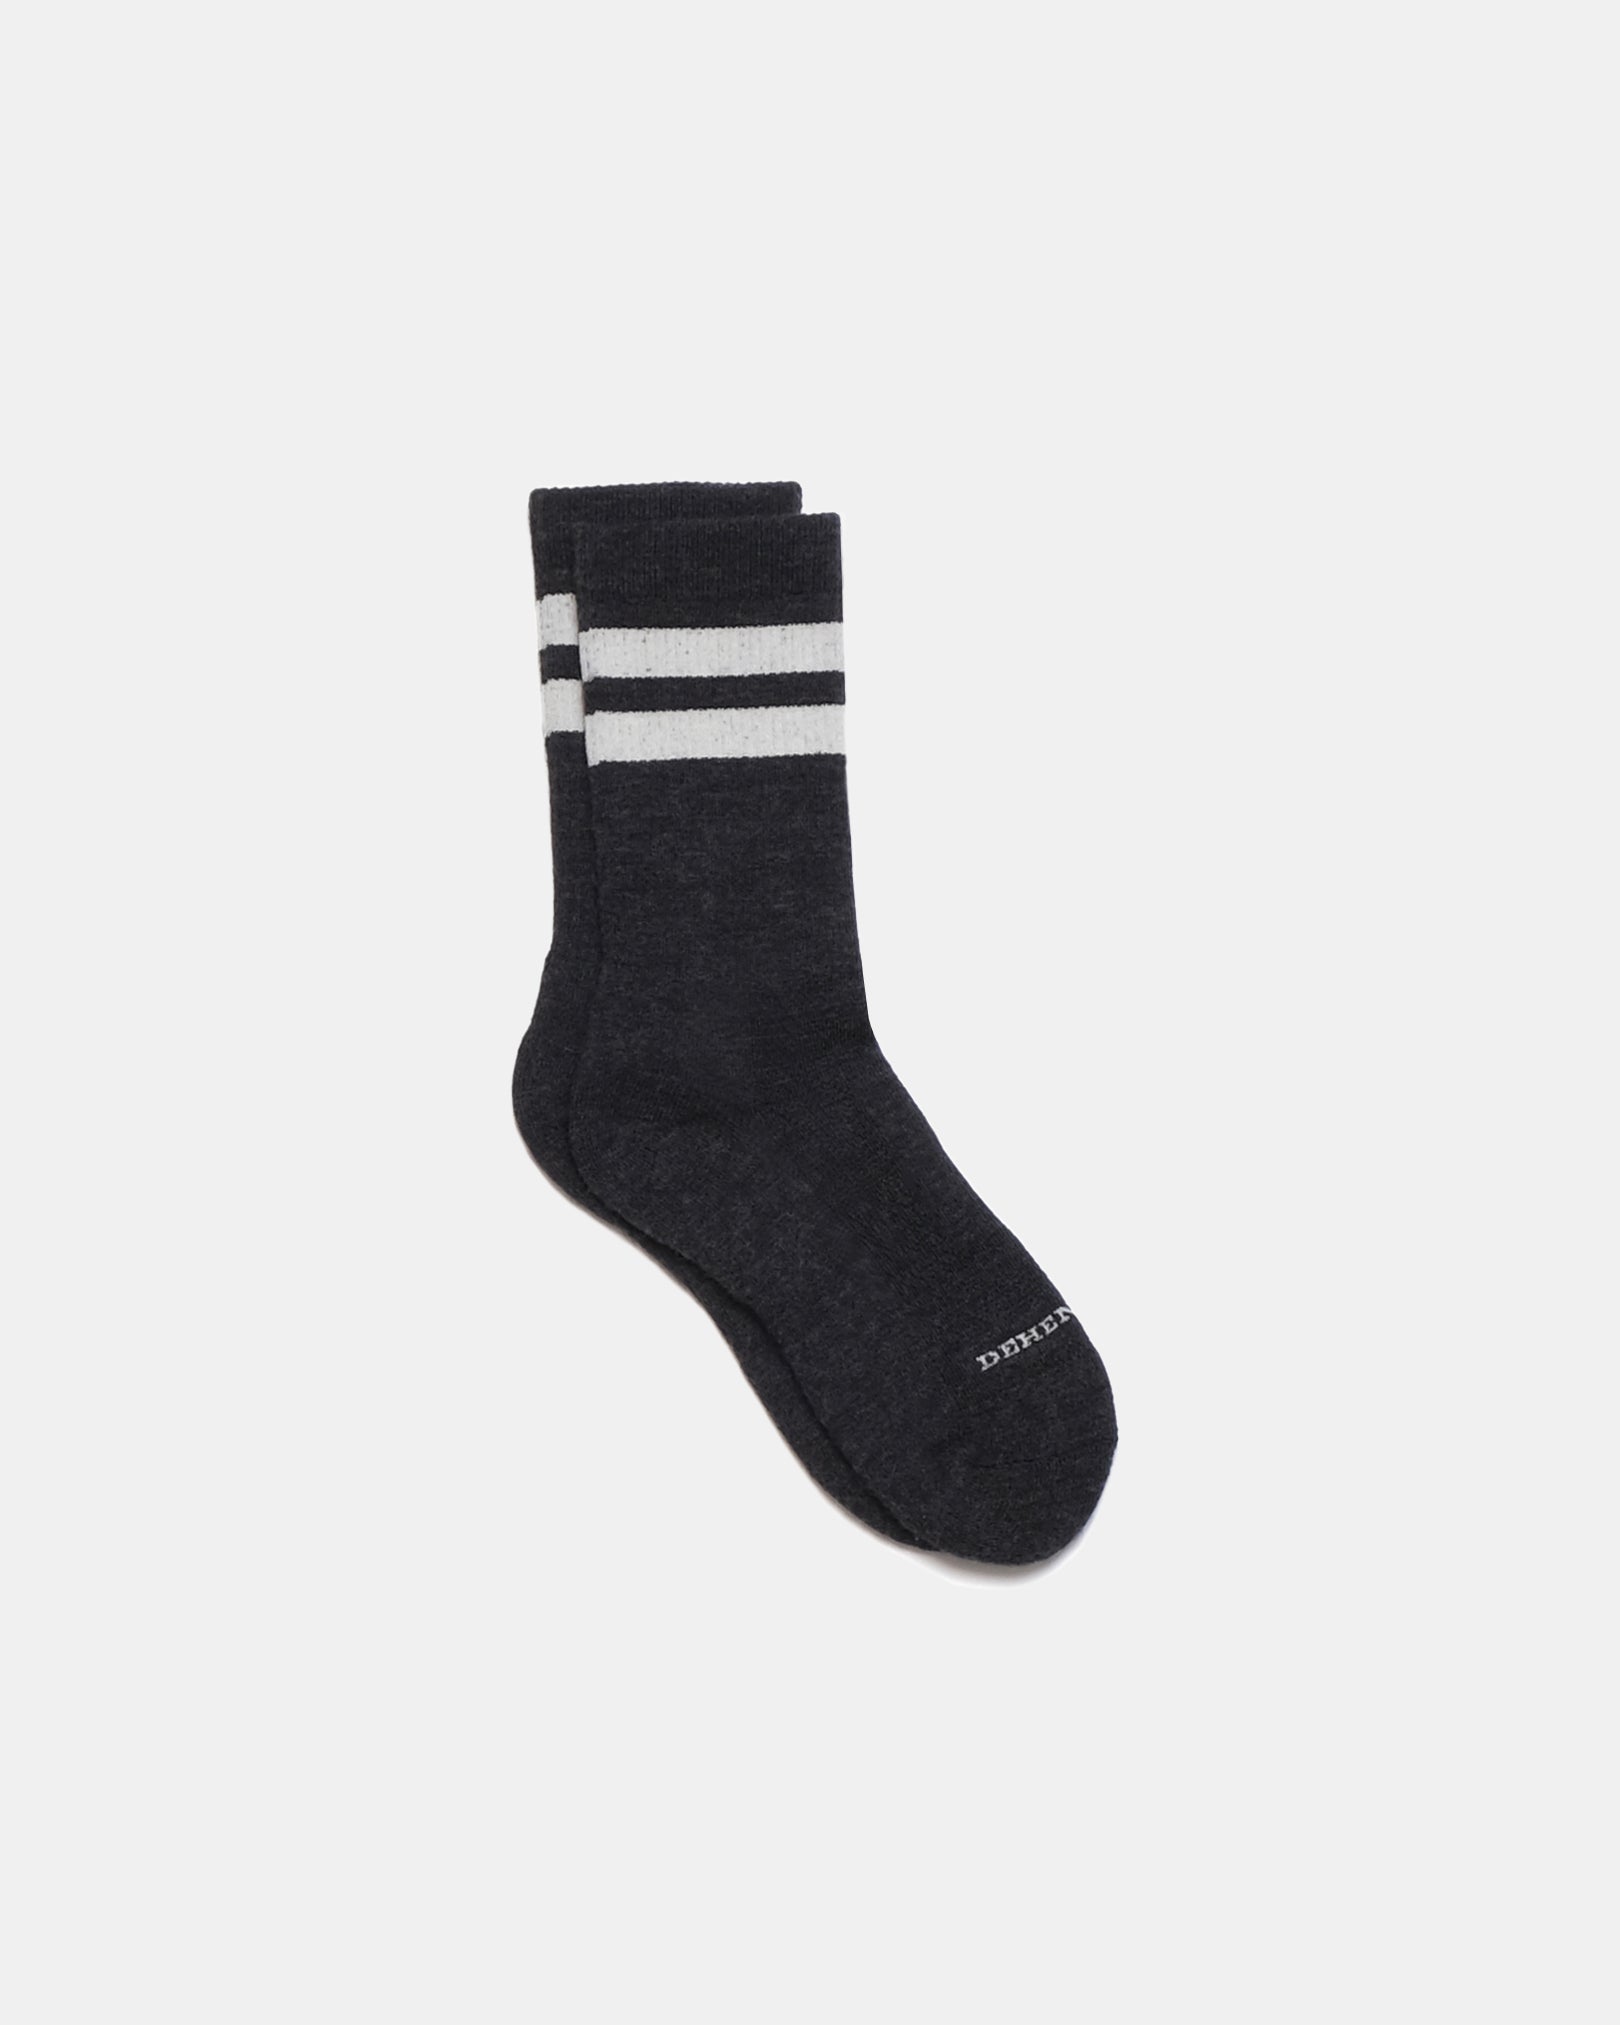 Heavy Duty Wool Socks - Charcoal Off White – Dehen 1920